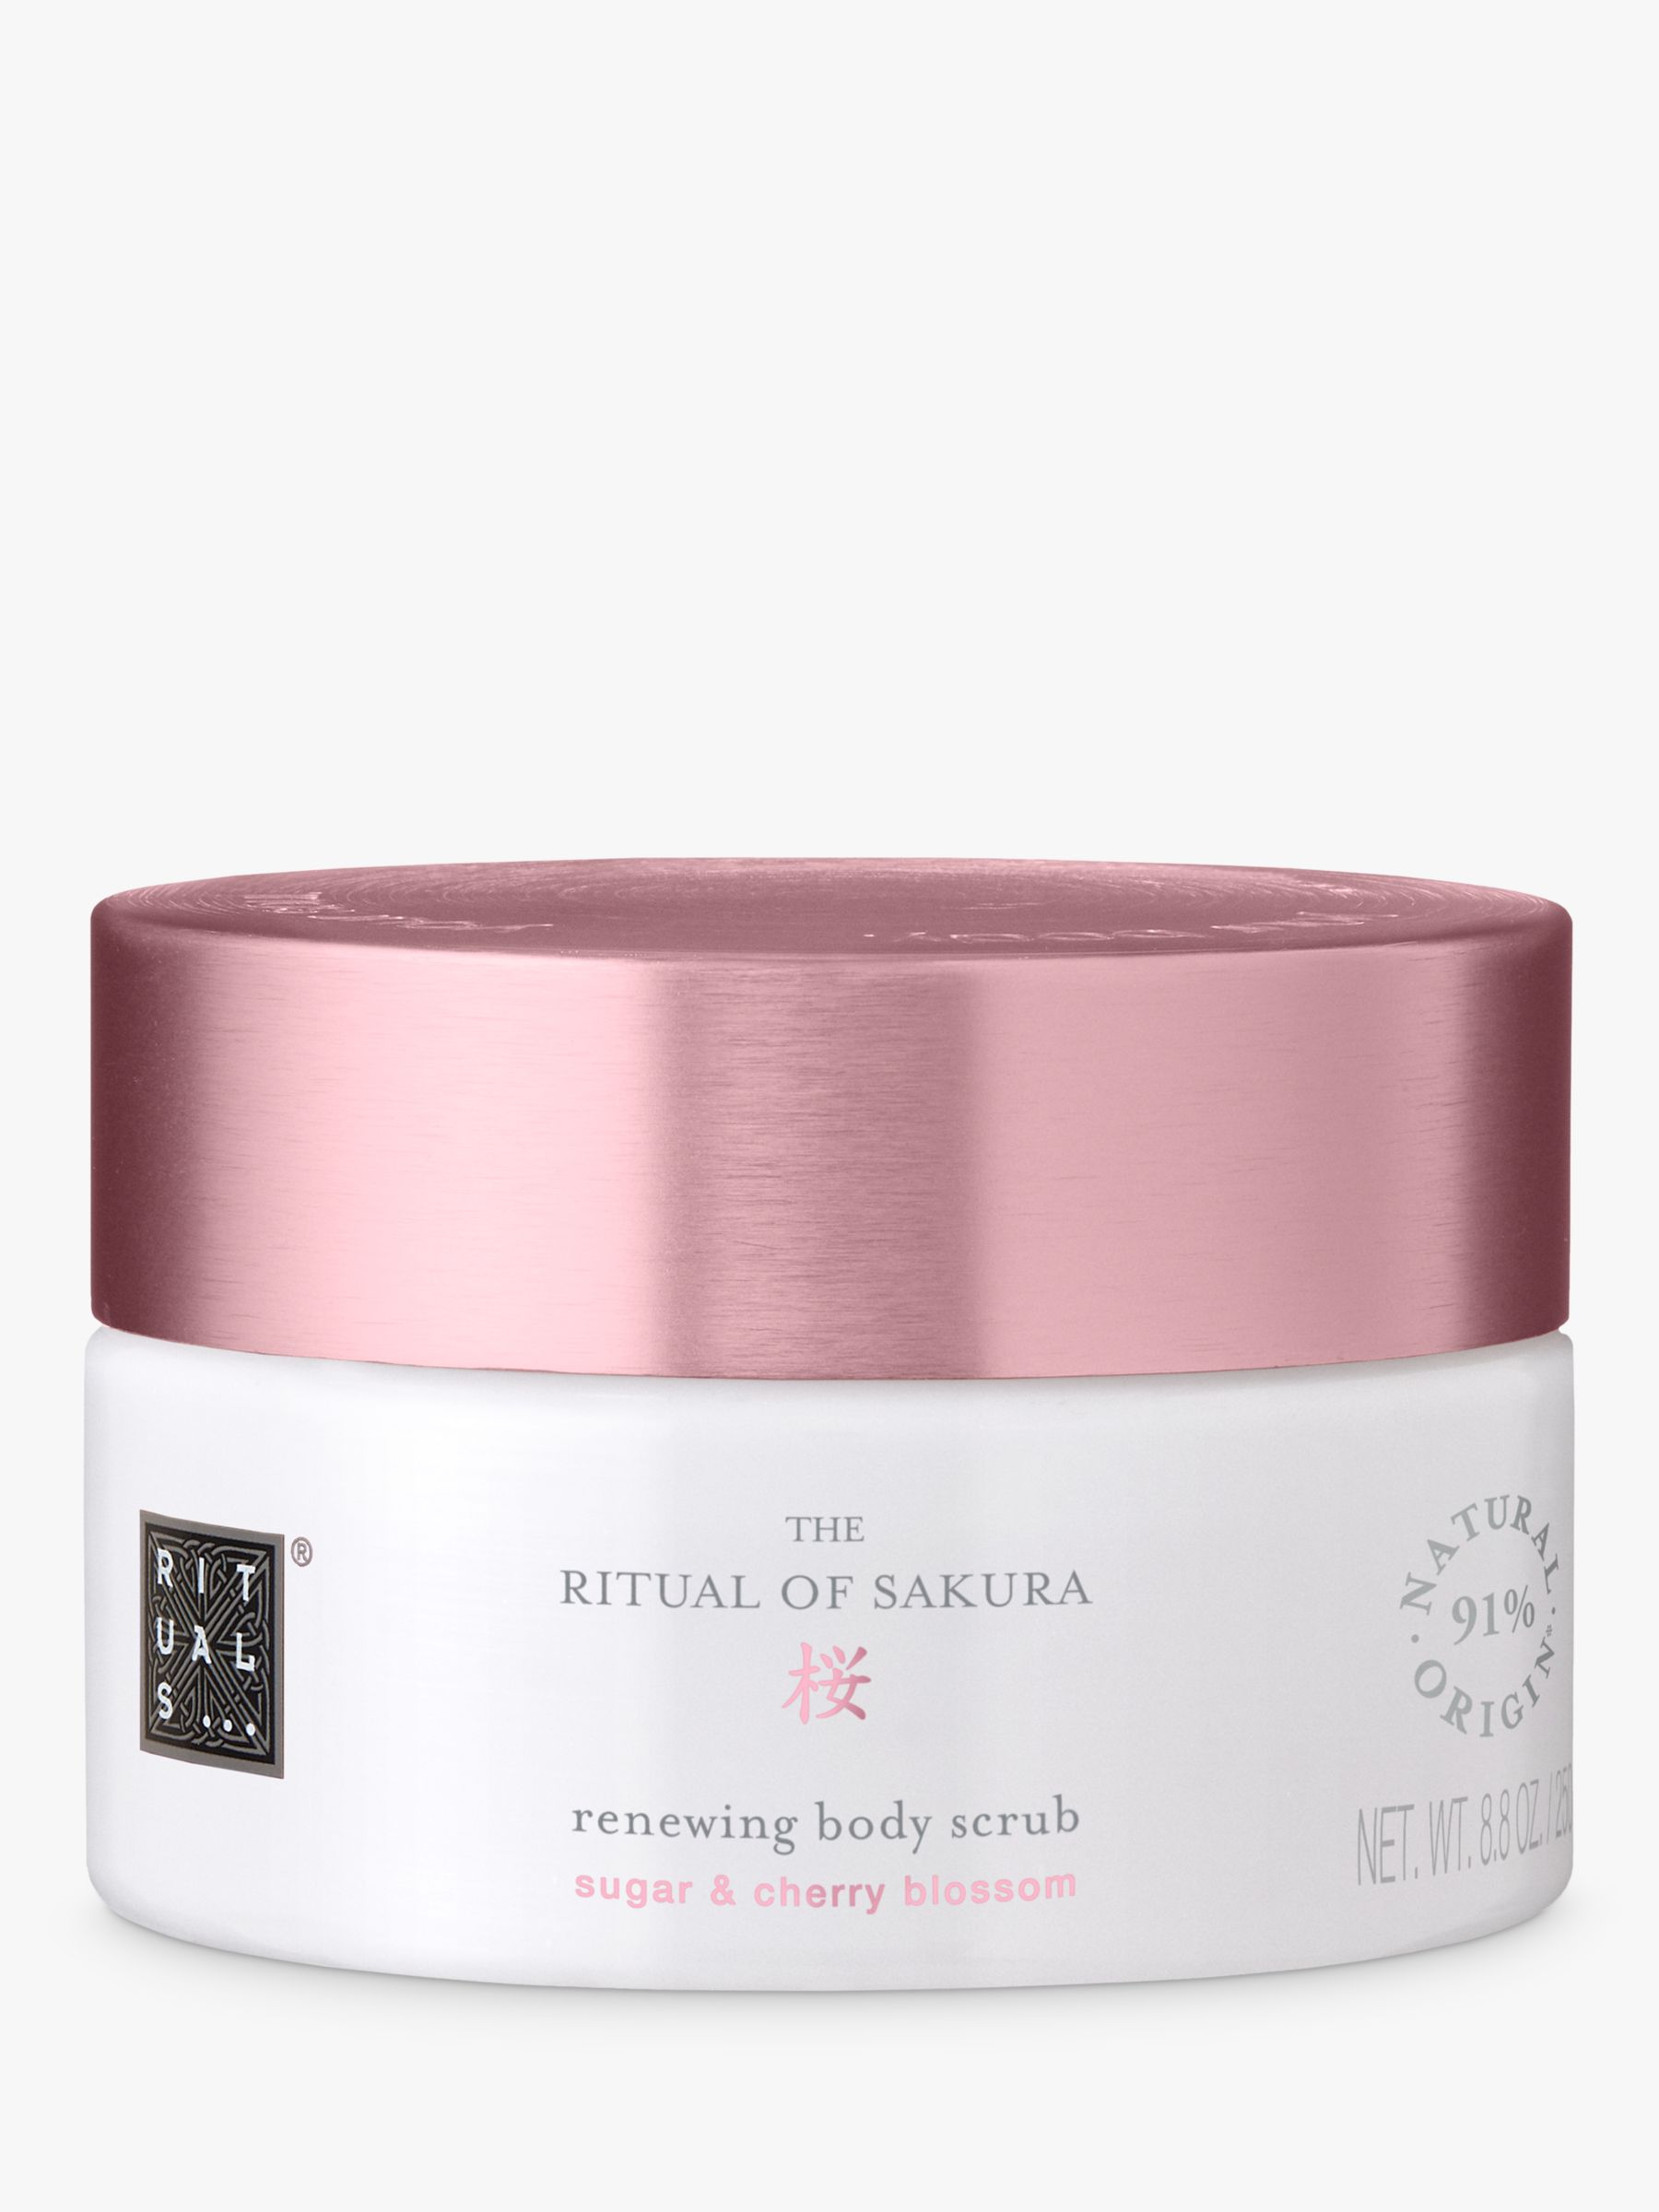 Rituals The Ritual of Sakura Renewing Body Scrub, 250g